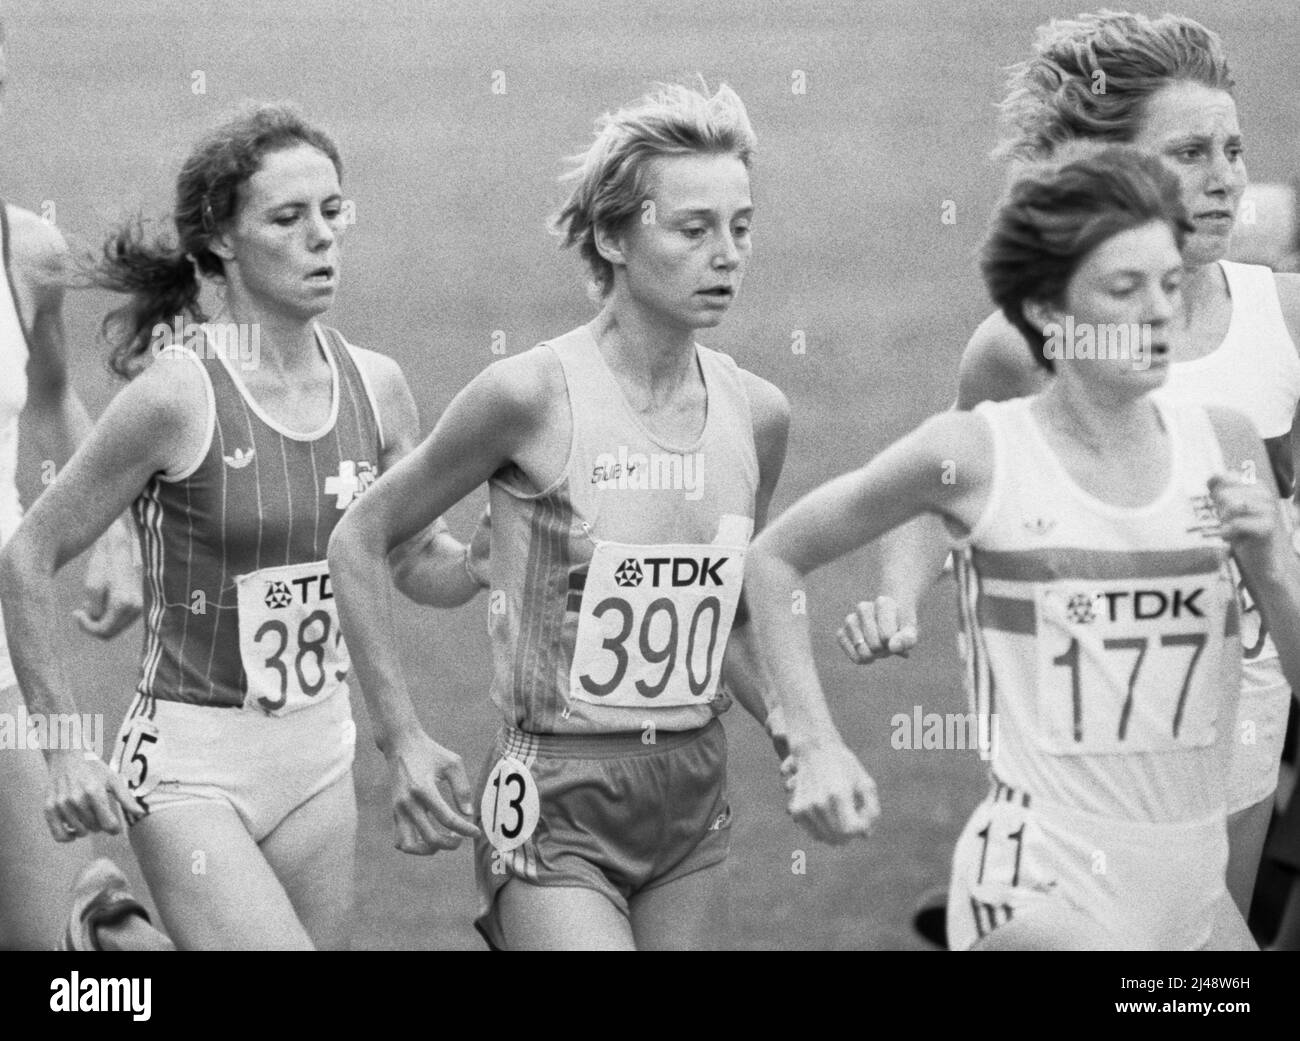 Cornelia Buerki Swisser /177/ Eva Ernström SWE /390/ und Jane Furniss GBR /177/Athletin beim IAAF-Weltmeister-Schiff in Helsinki Finnland am 1983. august Stockfoto